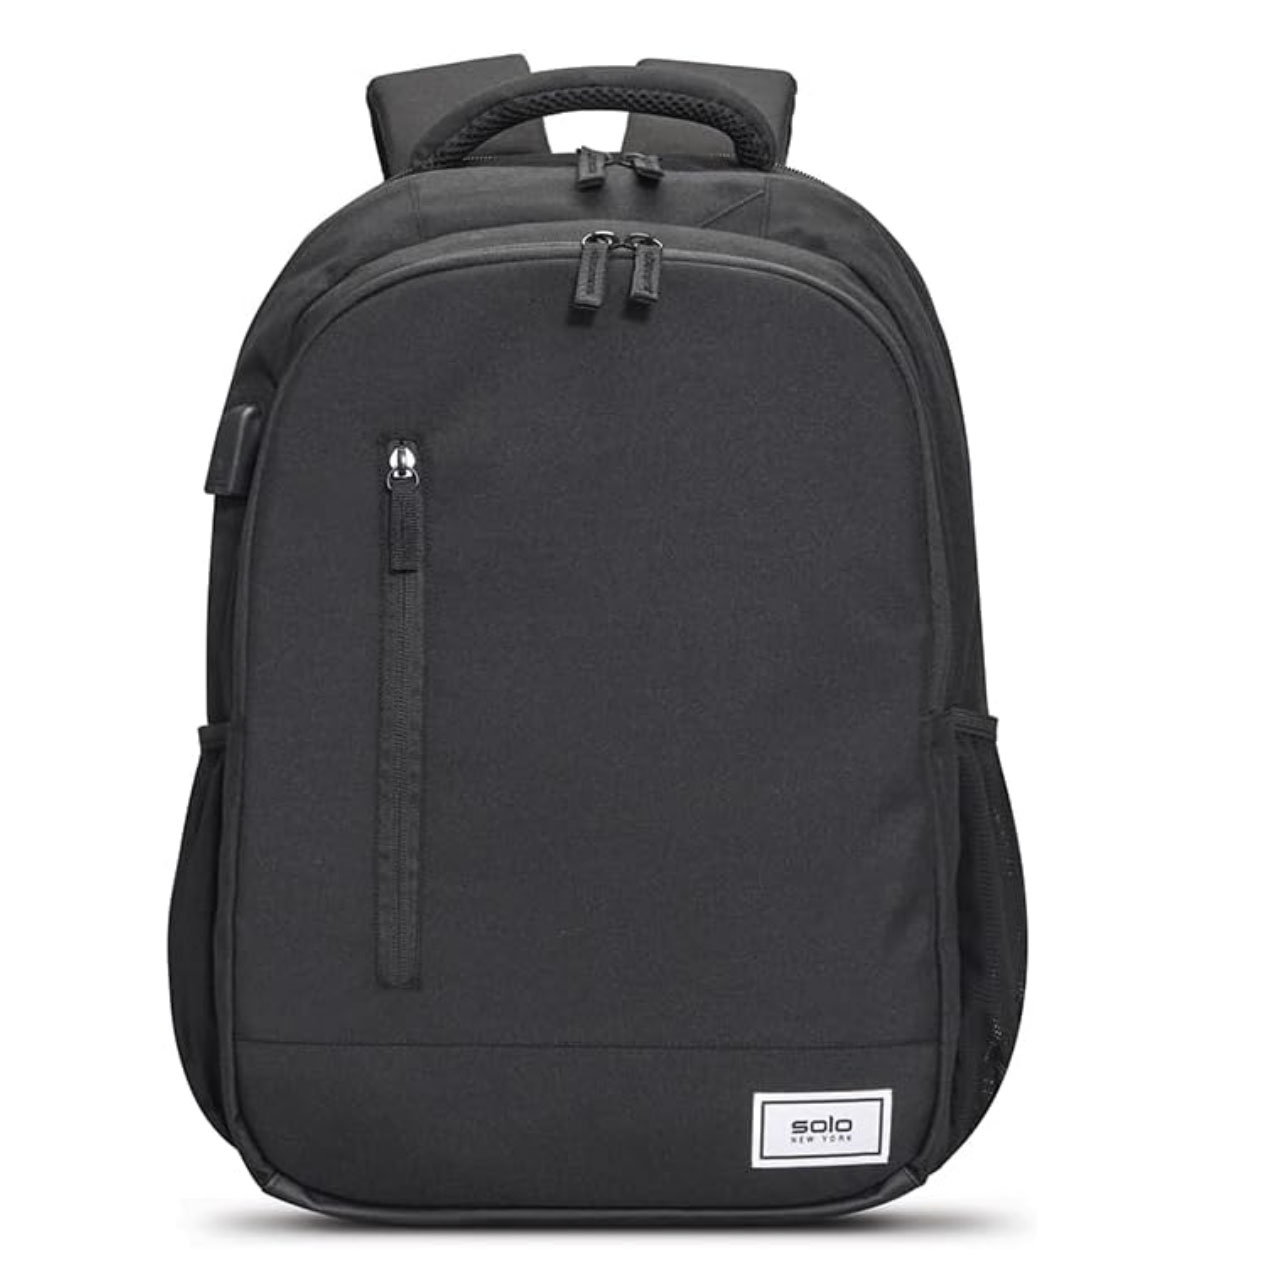 Simple black Laptop Backpack